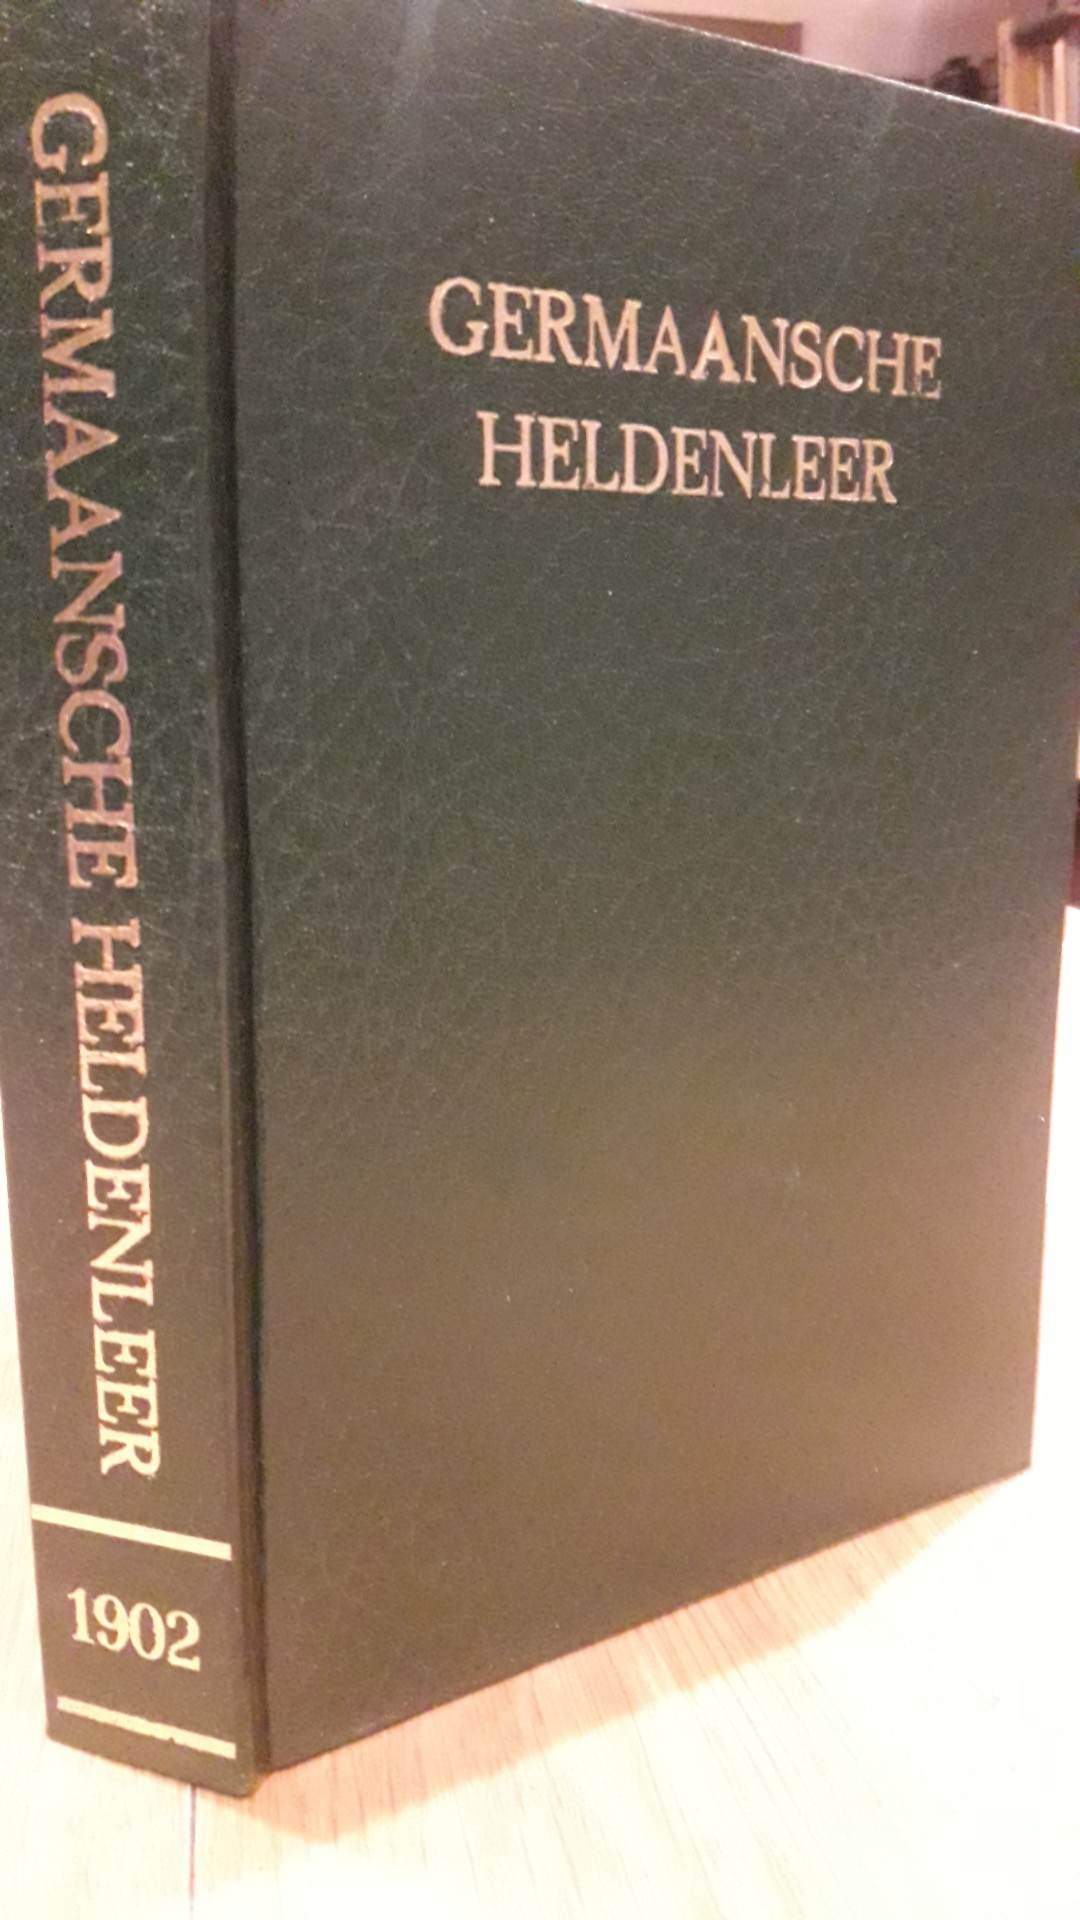 Germaansche Heldenleer - M. Brants 1902 - 304 blz / ZEER ZELDZAAM !!